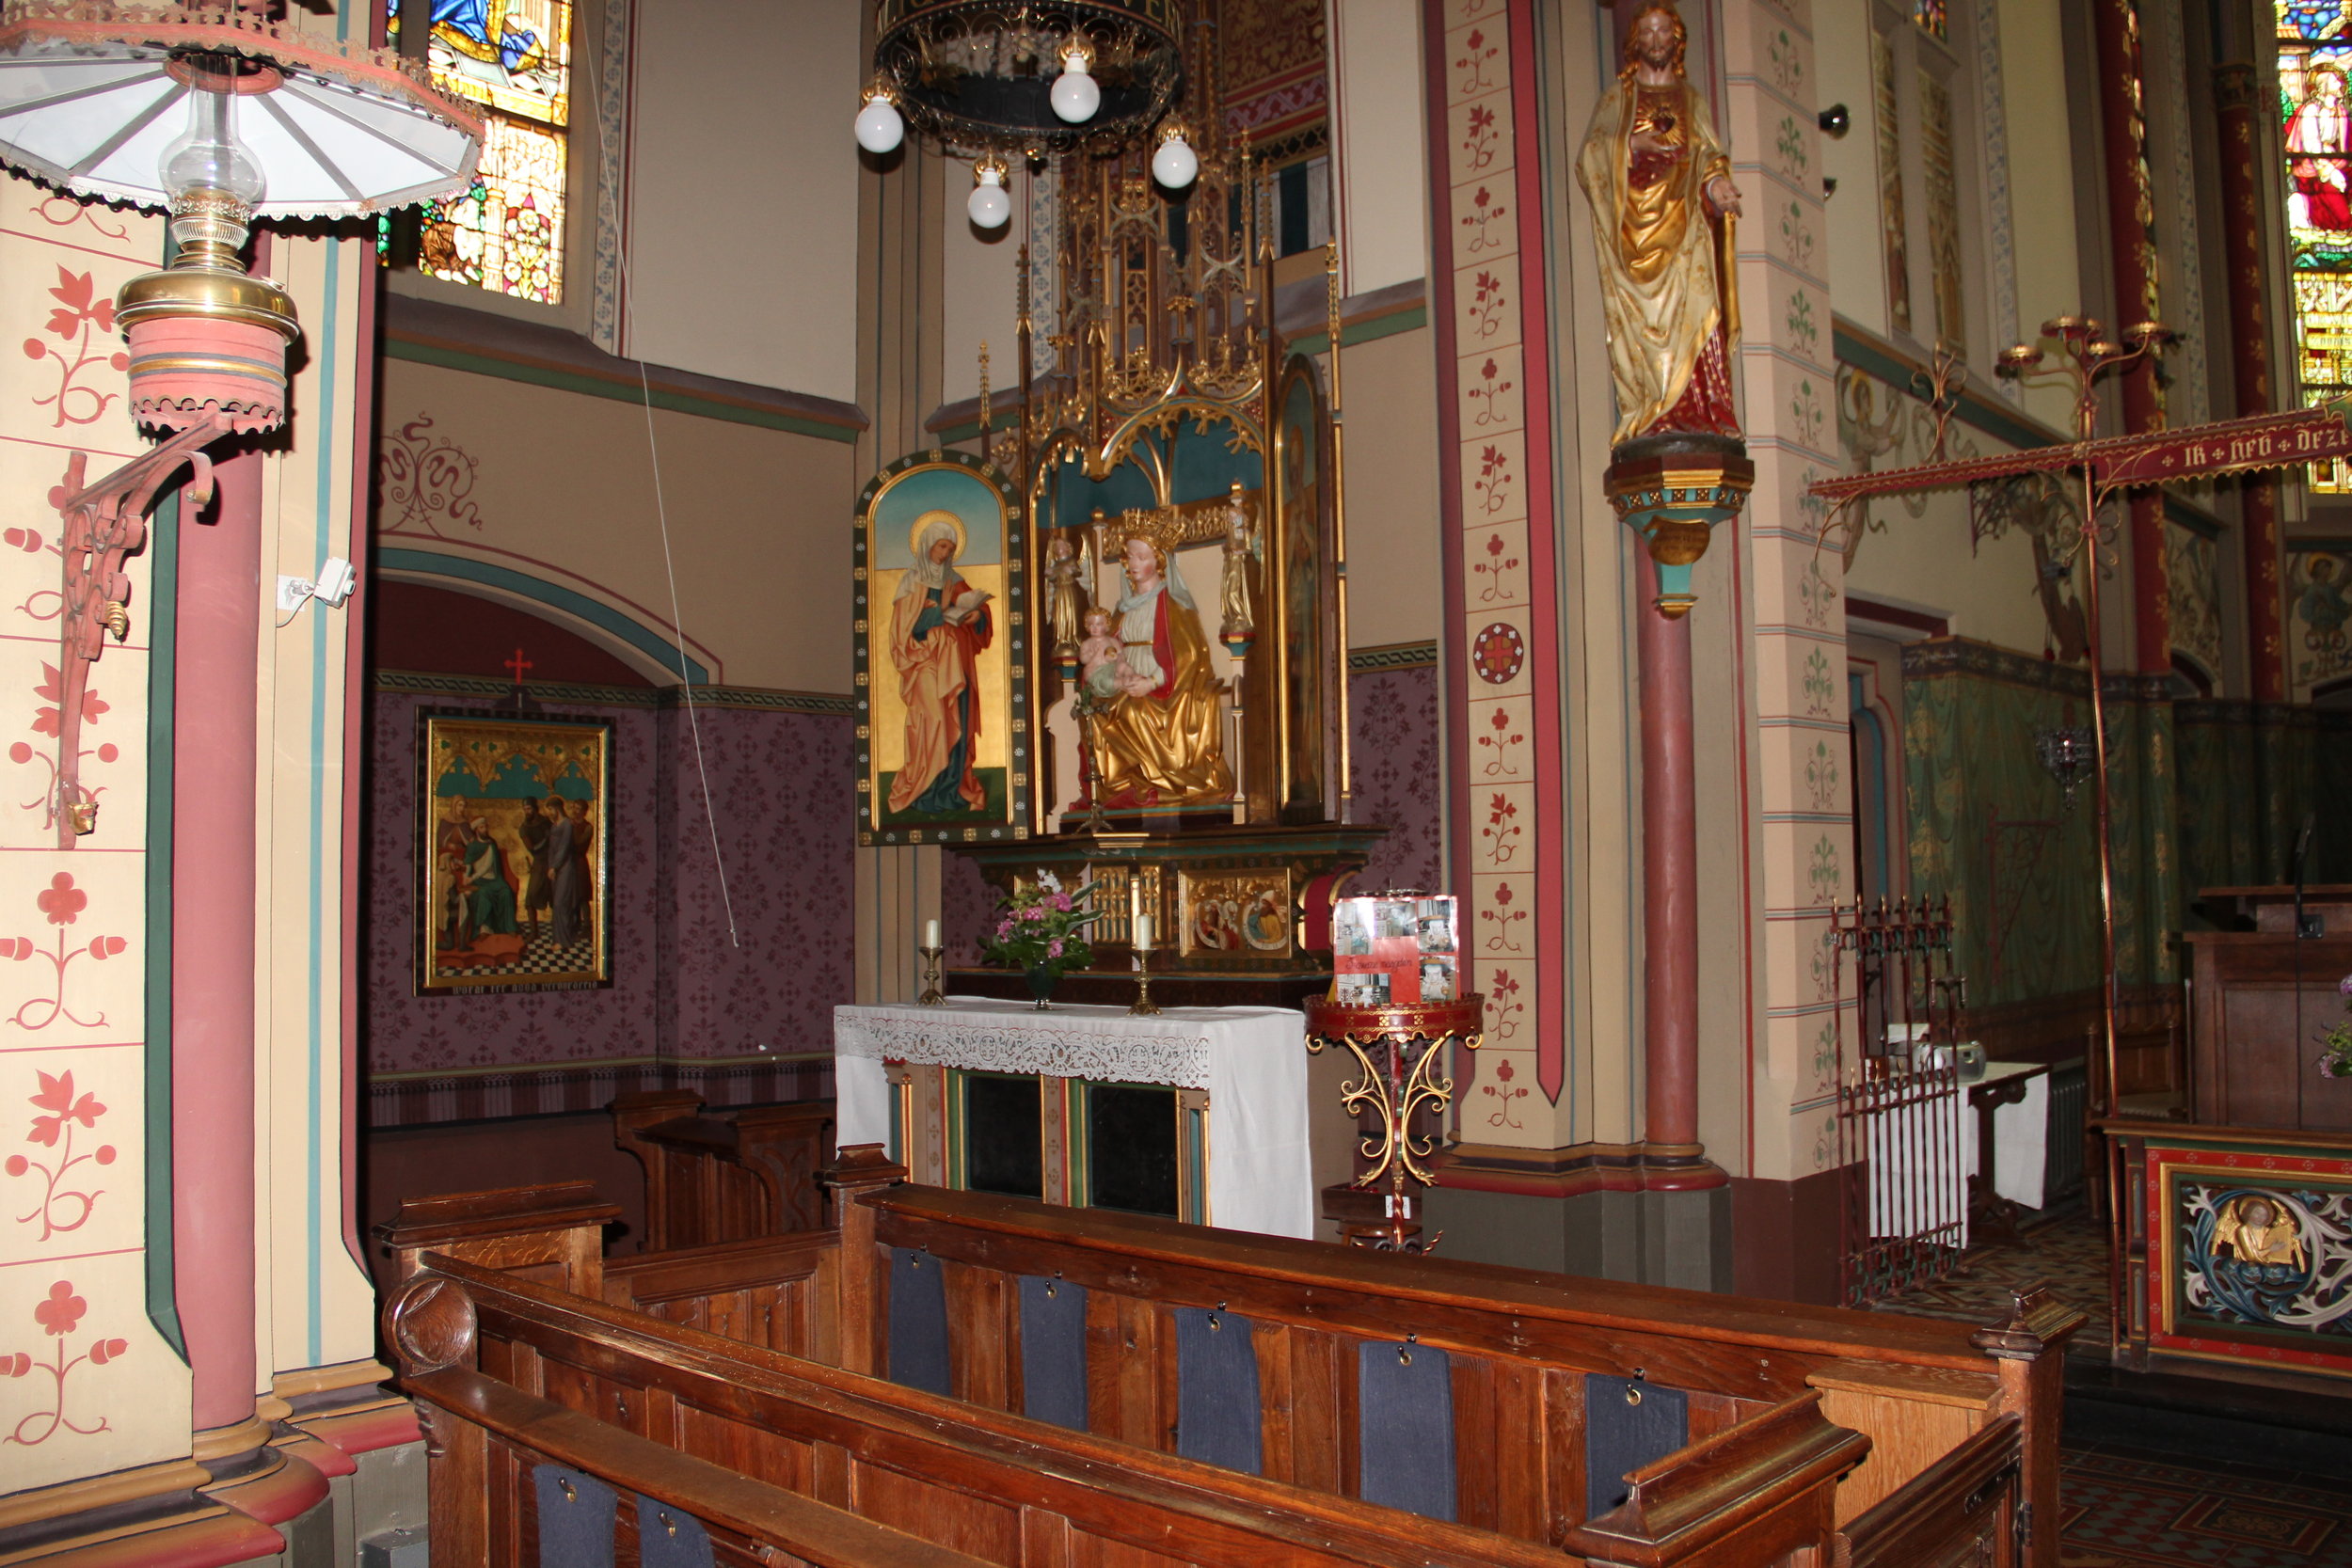 Church interior detail